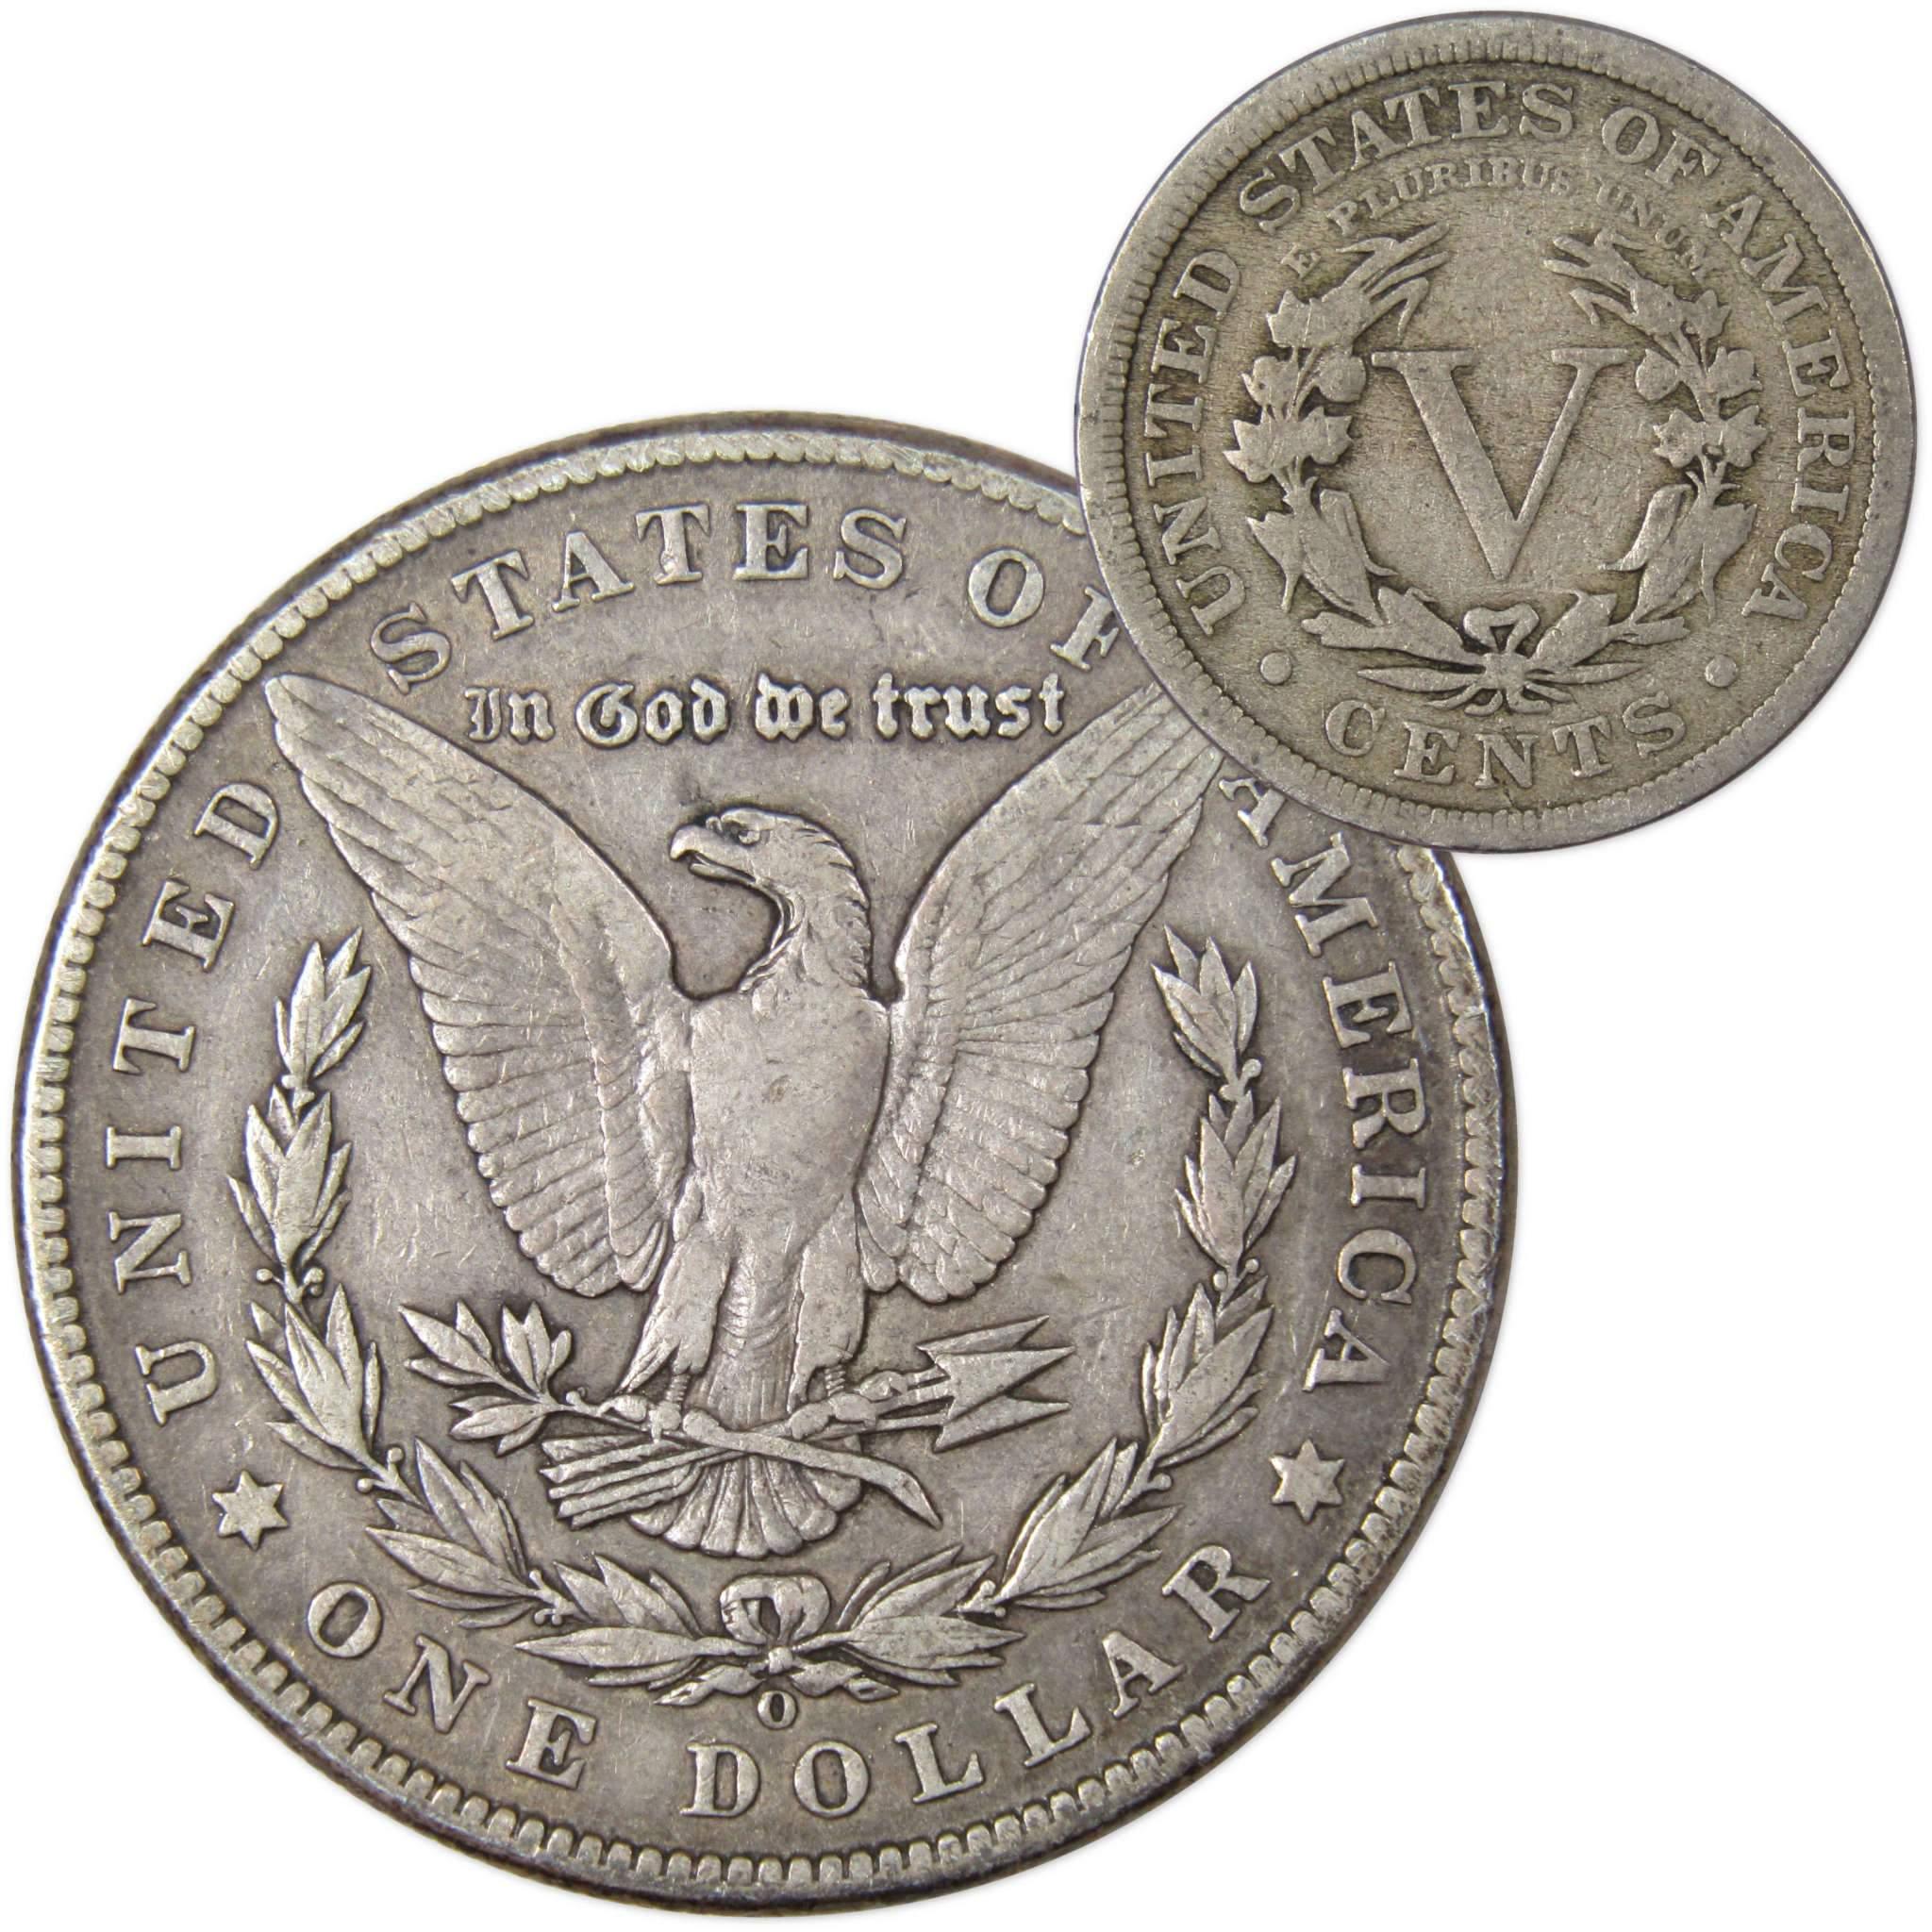 1902 O Morgan Dollar VF Very Fine 90% Silver with 1911 Liberty Nickel G Good - Morgan coin - Morgan silver dollar - Morgan silver dollar for sale - Profile Coins &amp; Collectibles